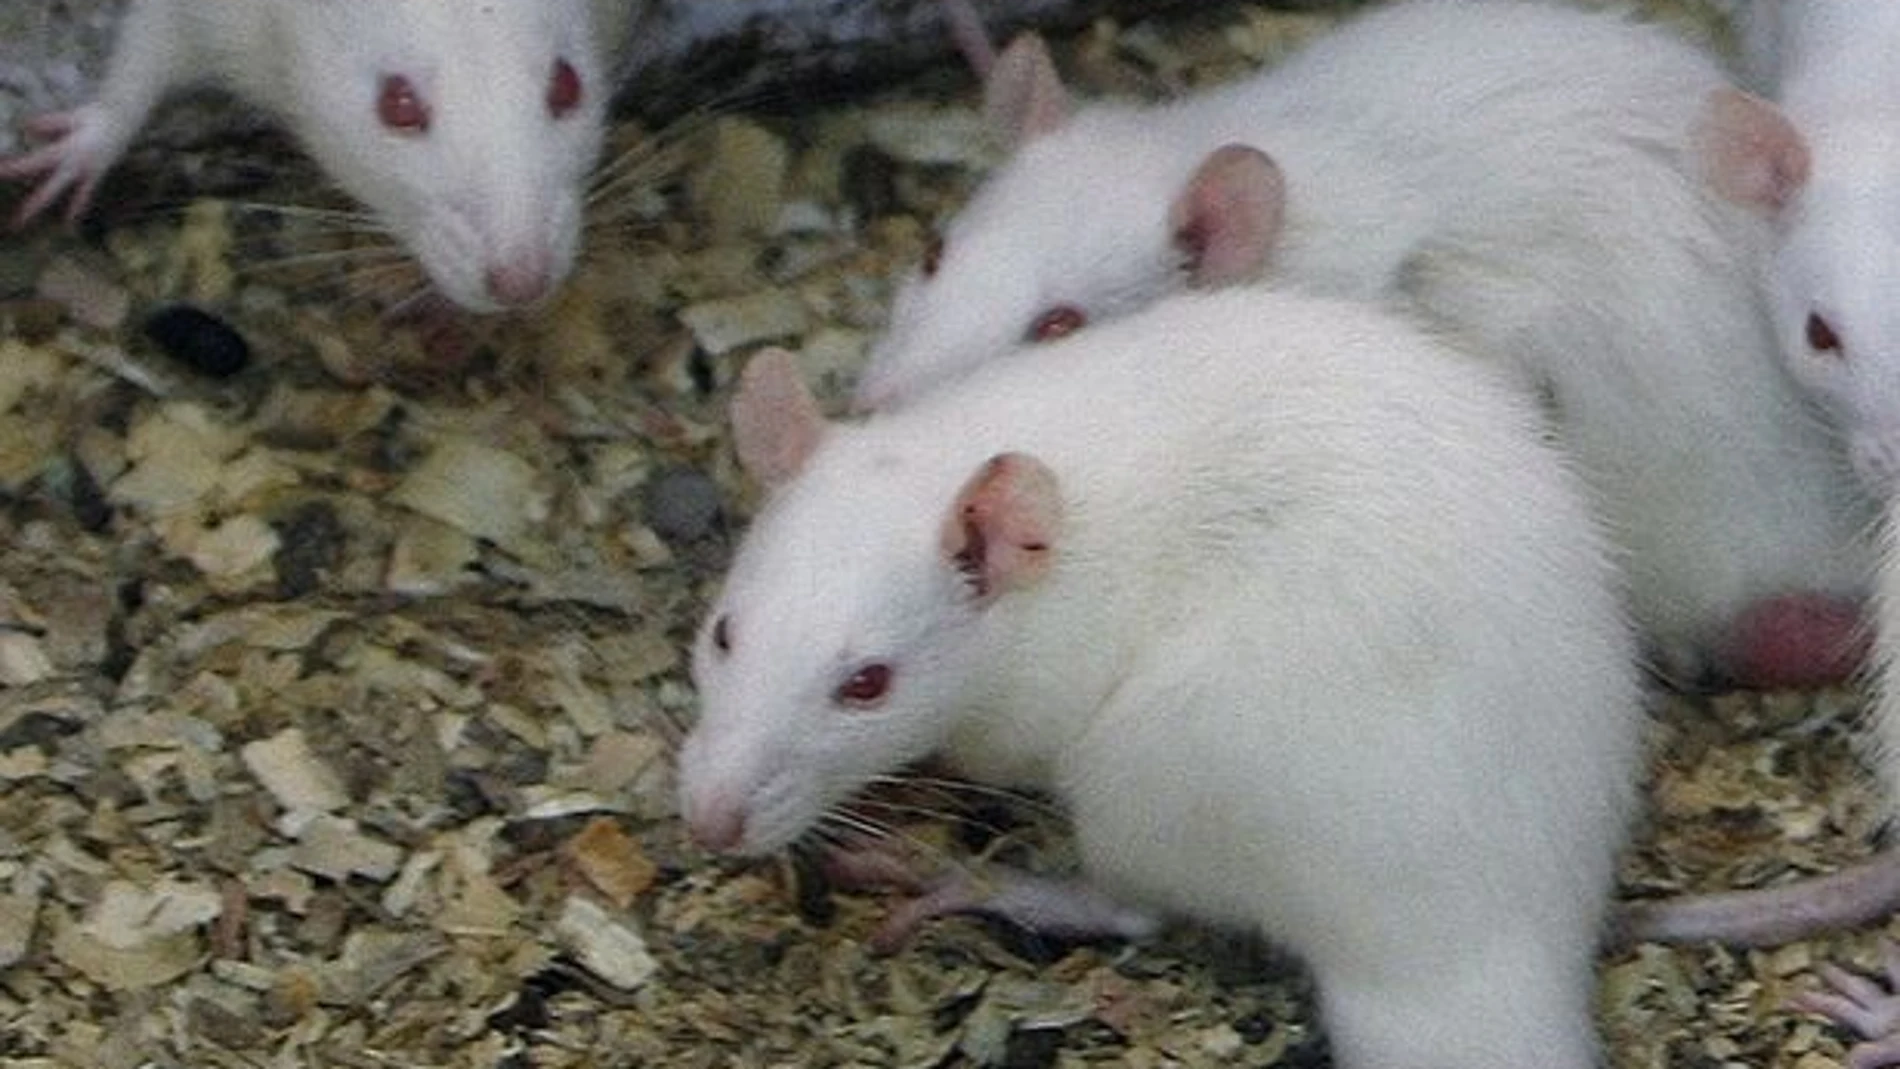 El experimento ha logrado revertir el proceso de inevecimiento muscular de los ratones